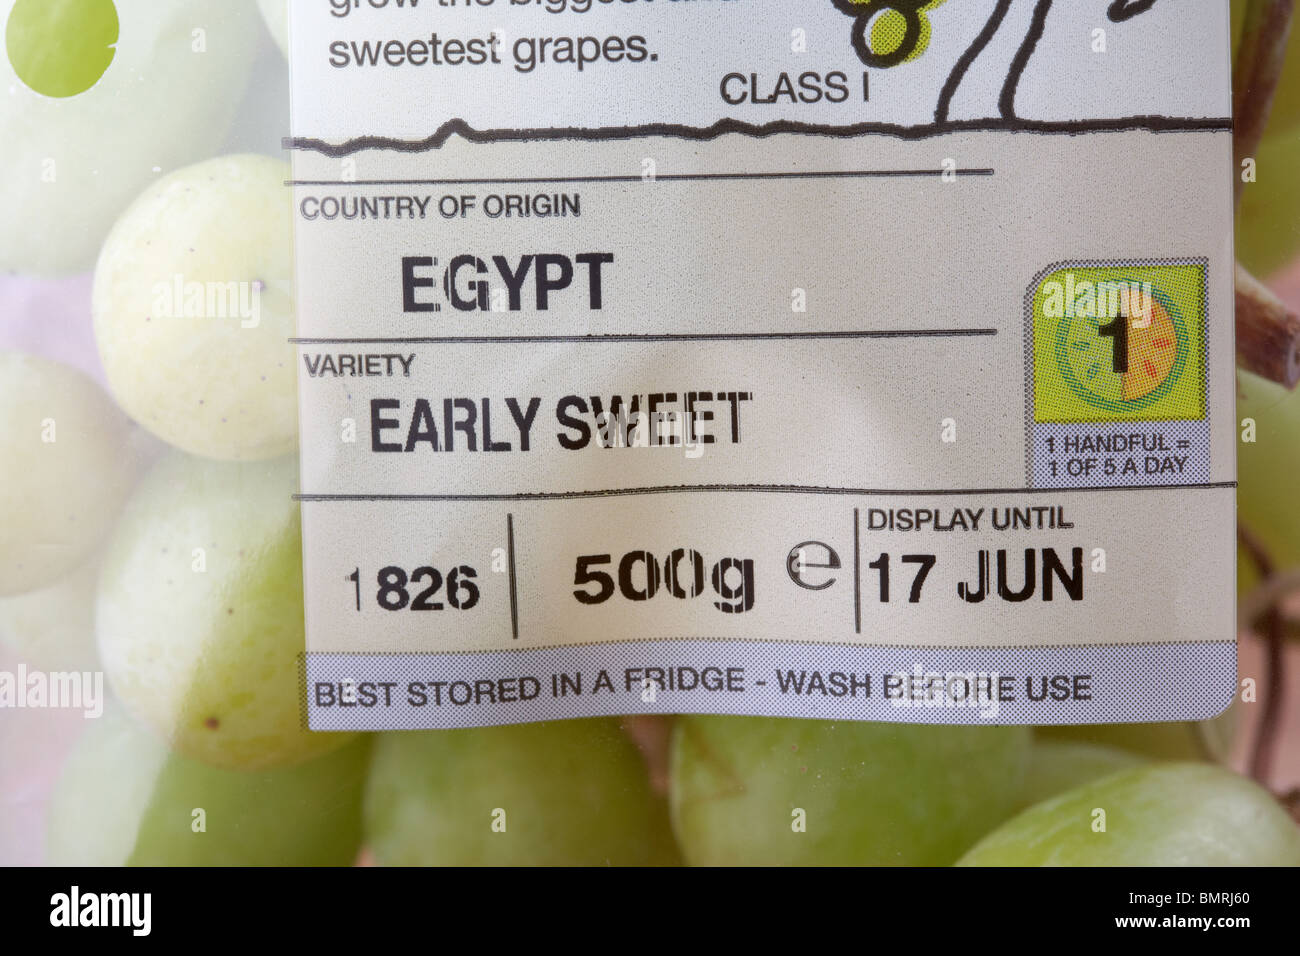 Etichetta di un pacchetto di inizio dolci uve coltivate in Egitto venduti nel Regno Unito Foto Stock